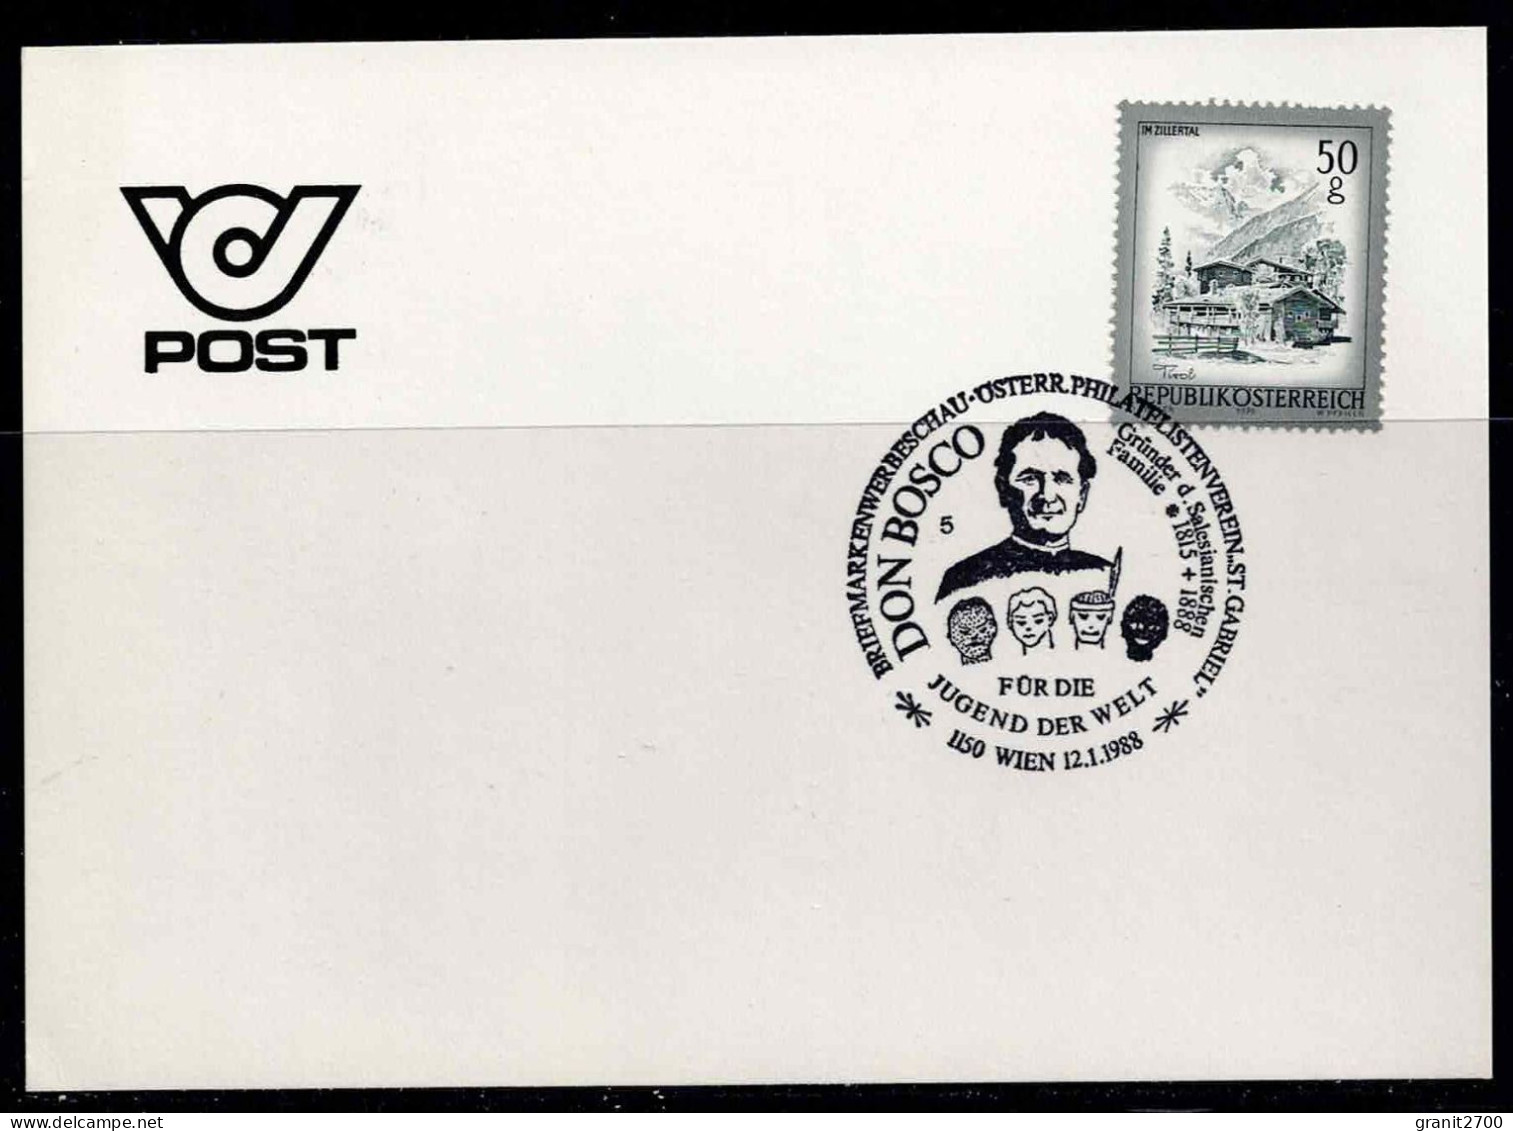 Sonderstempel Briefmarkenwerbeschau - öst. Philatelistenverein  S. Gabriel  - 1150 Wien Vom12.1.1988 - Covers & Documents